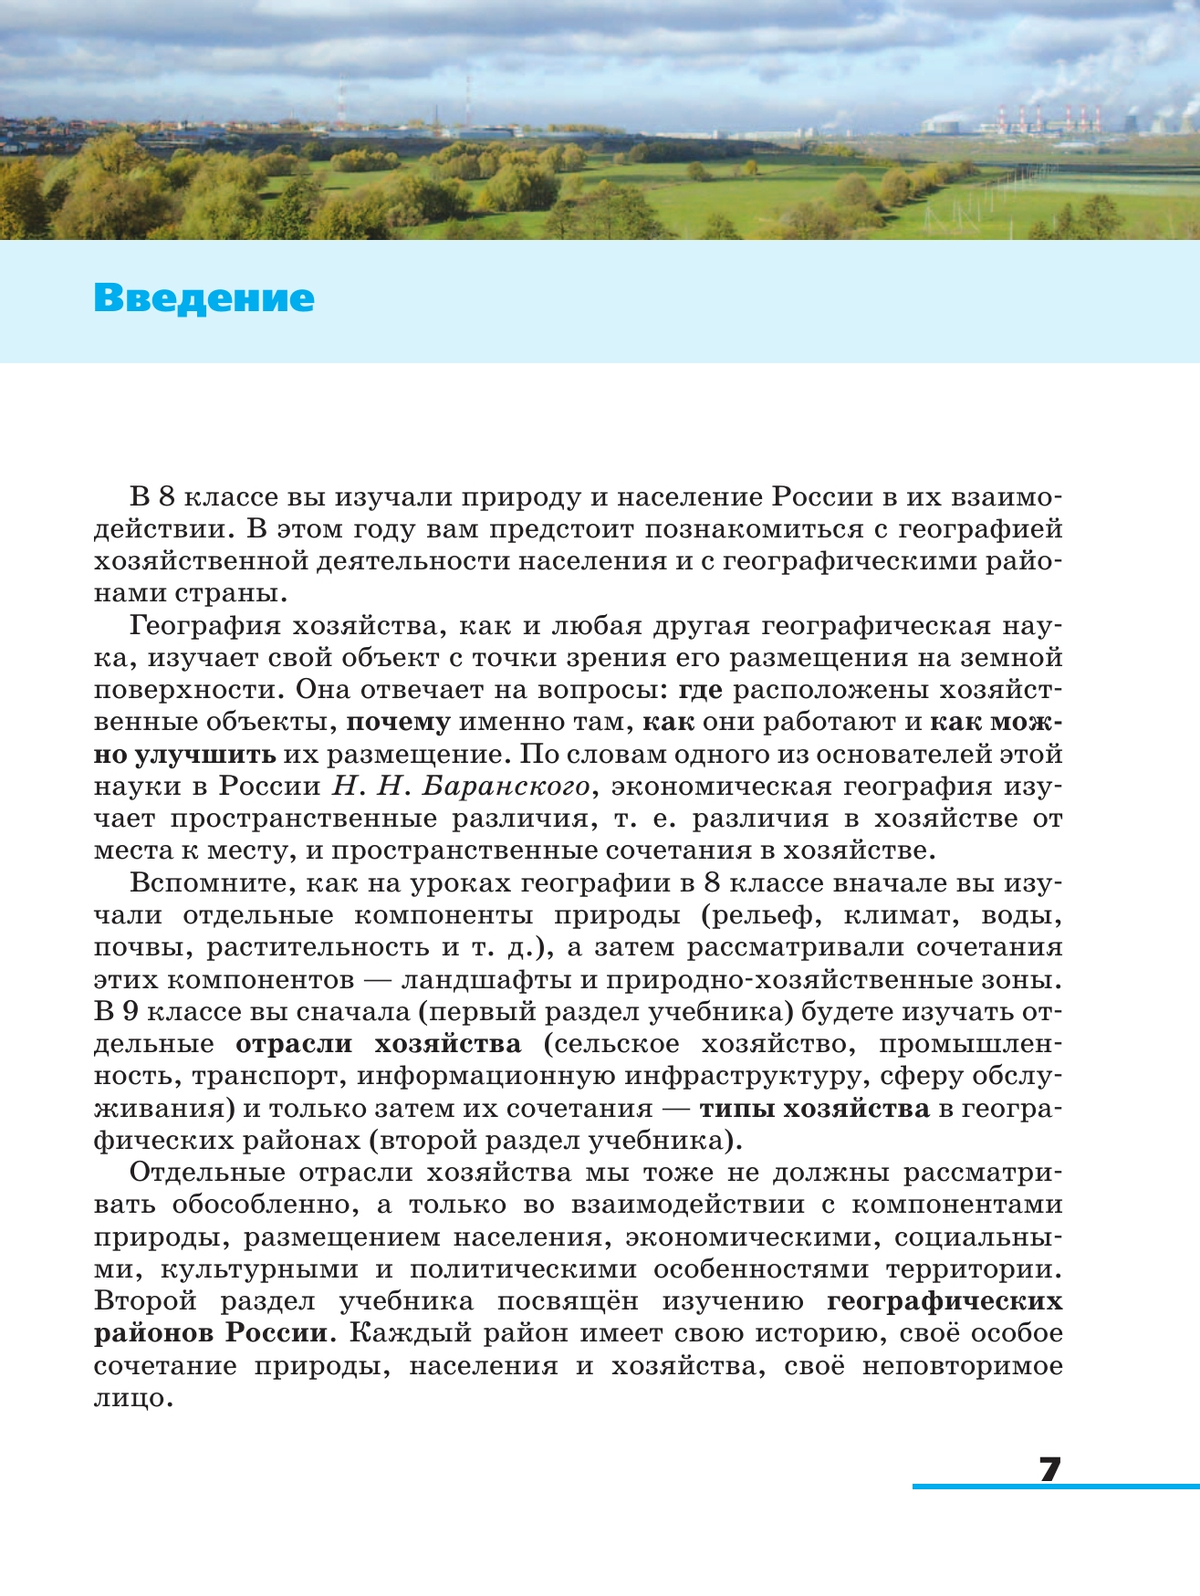 География. 9 класс. География России. Хозяйство и географические районы. Учебник 4